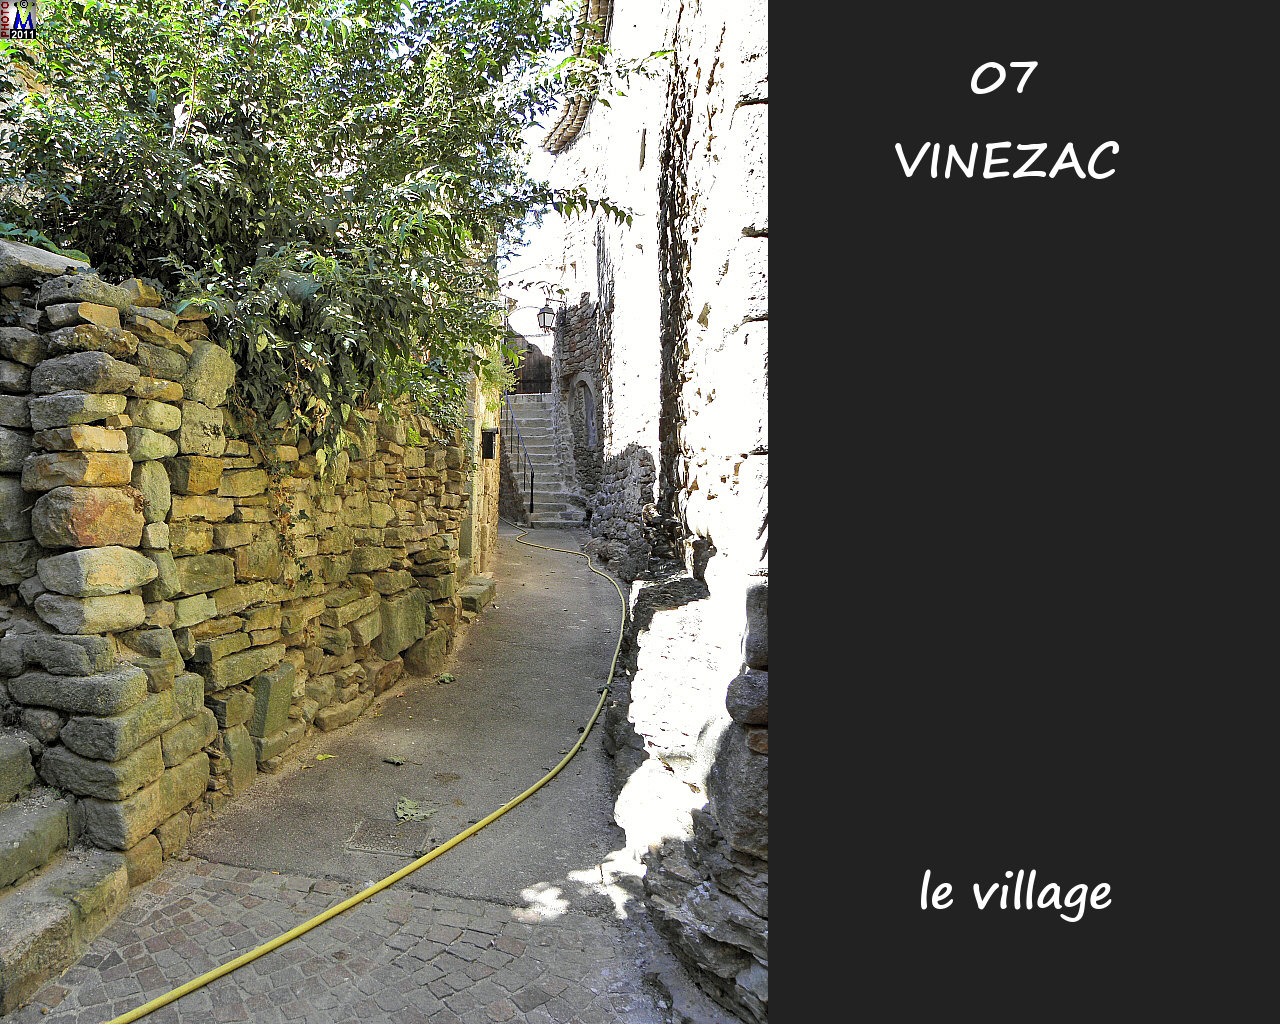 07VINEZAC_village_172.jpg